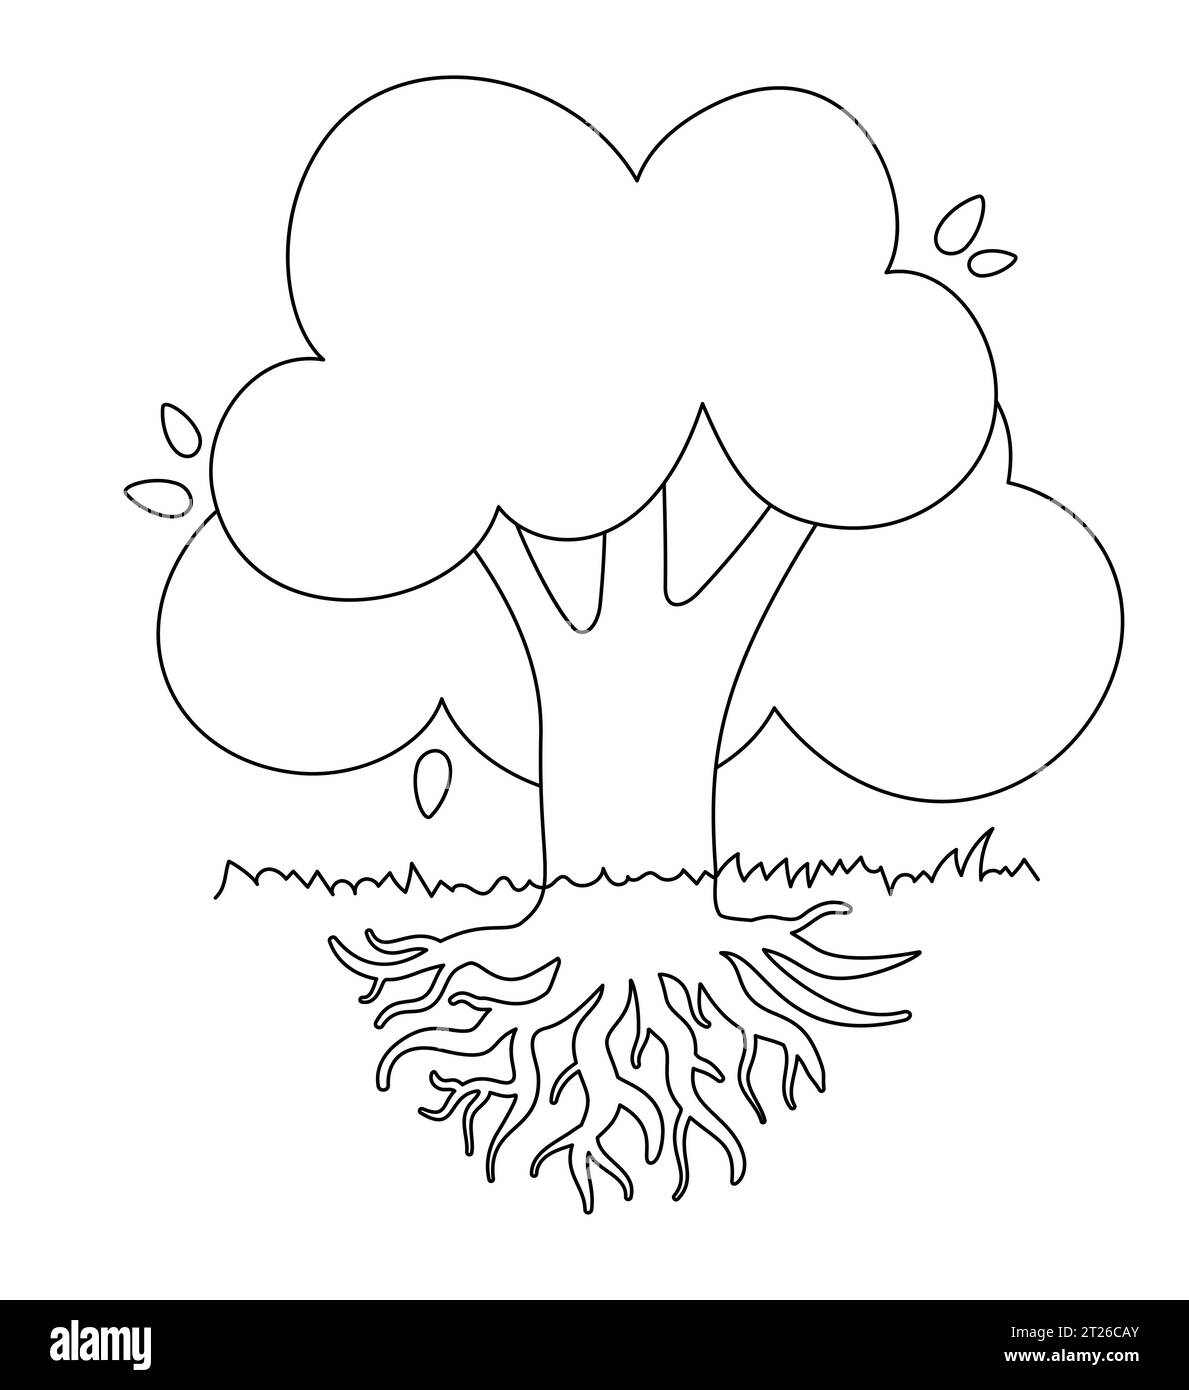 Dessin noir et blanc d'arbre à feuilles caduques avec un grand système racinaire de krone. Silhouette de ligne pour la coloration d'enfant. Image vectorielle isolée. Illustration de Vecteur